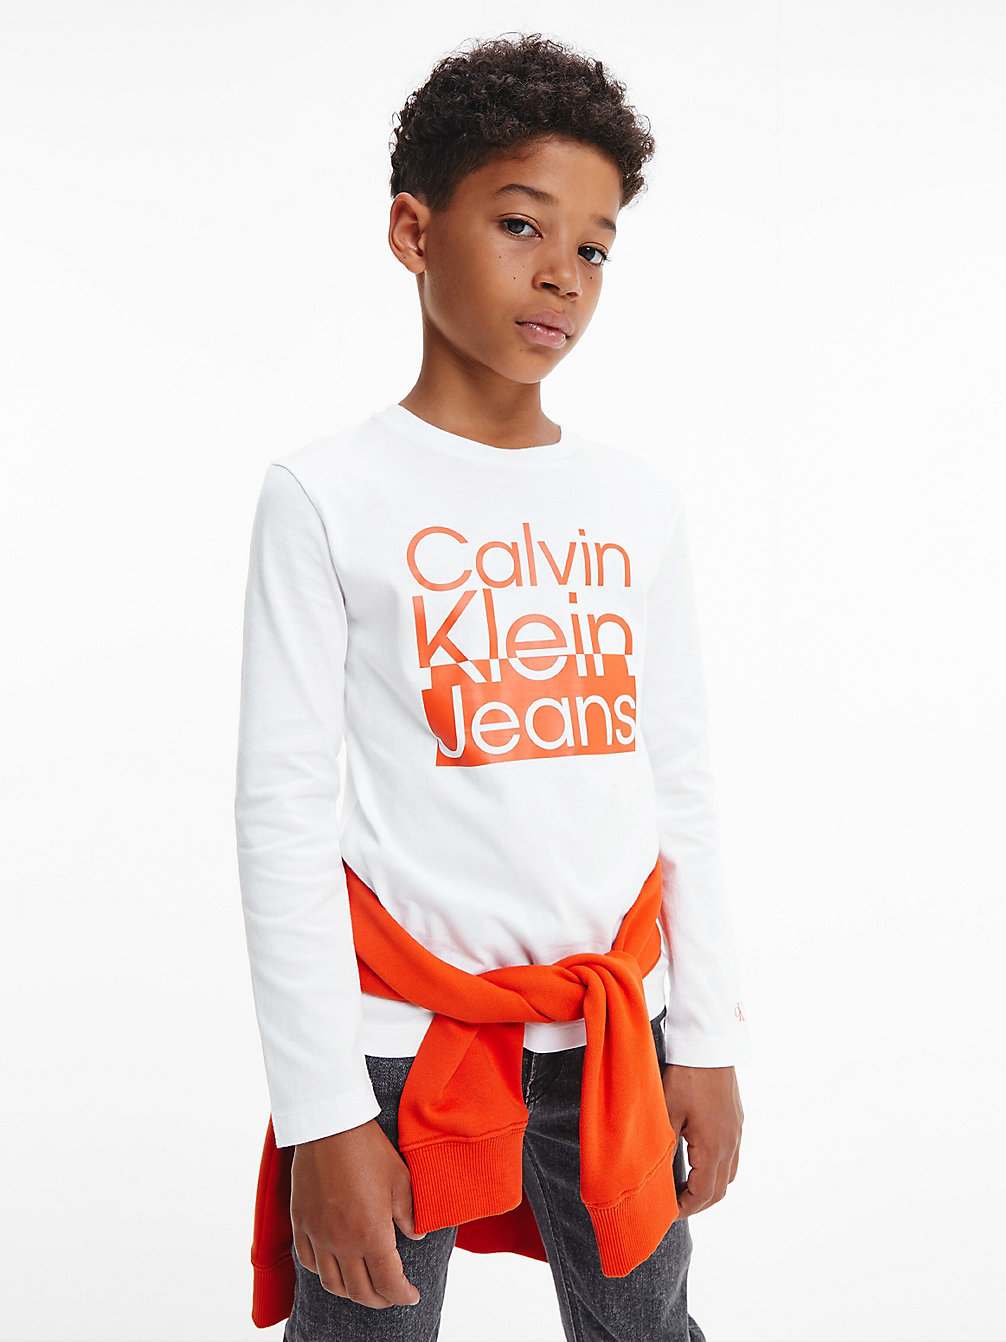 BRIGHT WHITE > Langärmliges Logo-T-Shirt > undefined boys - Calvin Klein